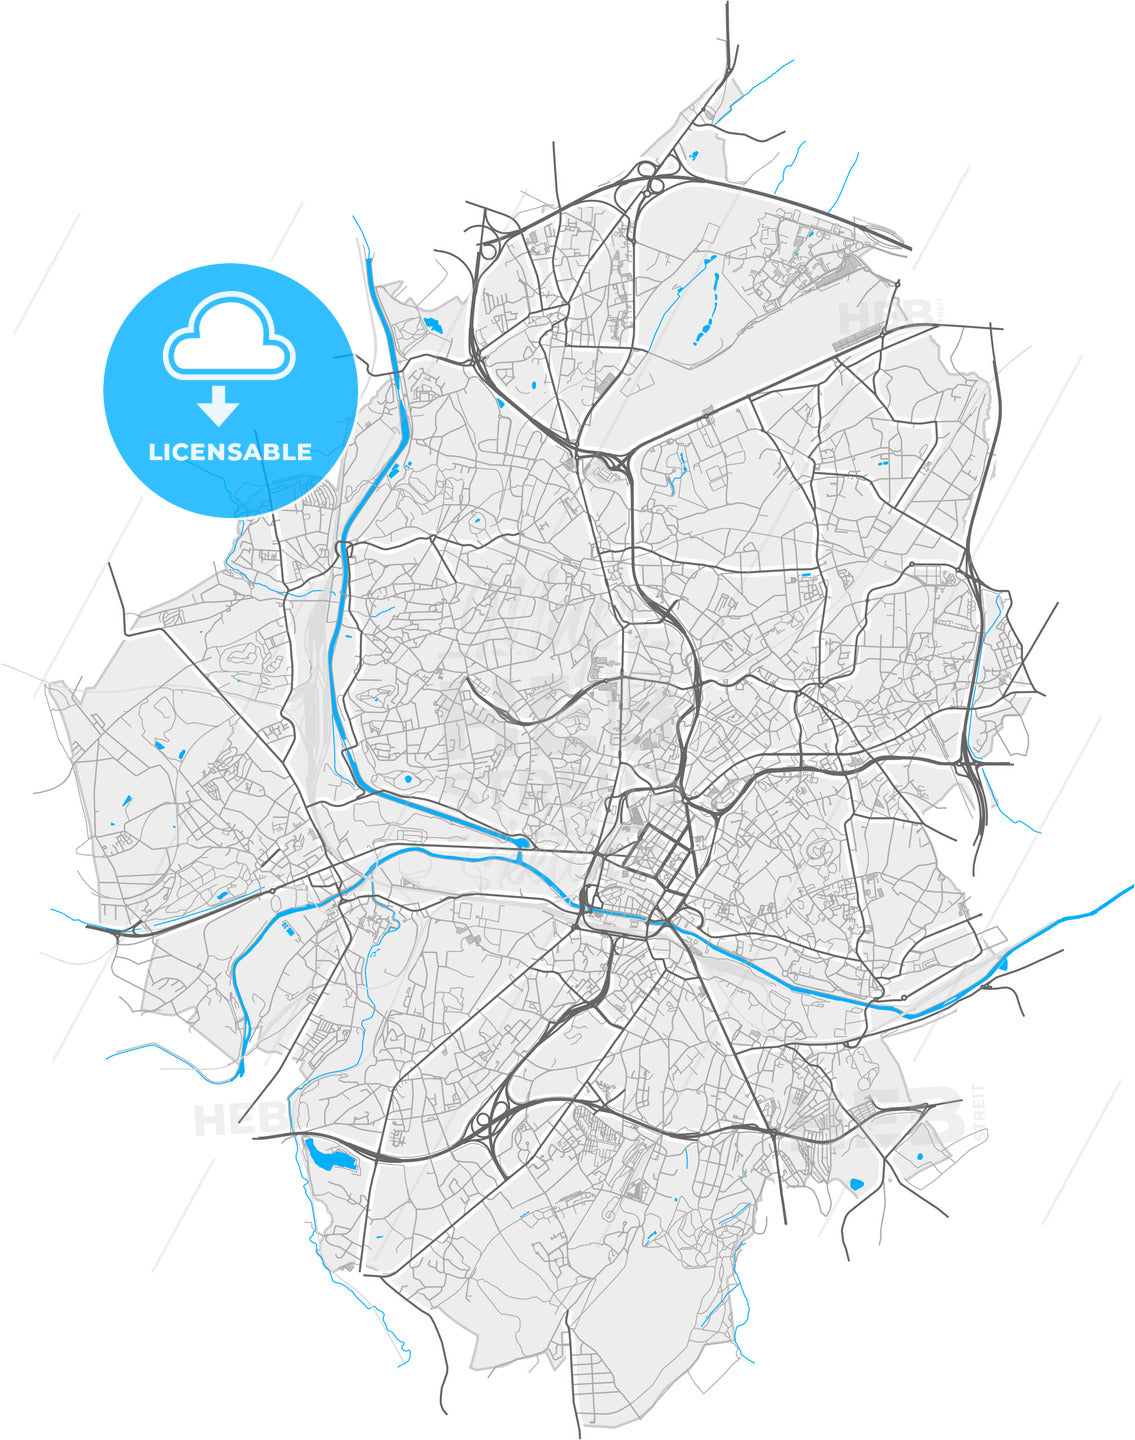 Charleroi, Hainaut, Belgium, high quality vector map